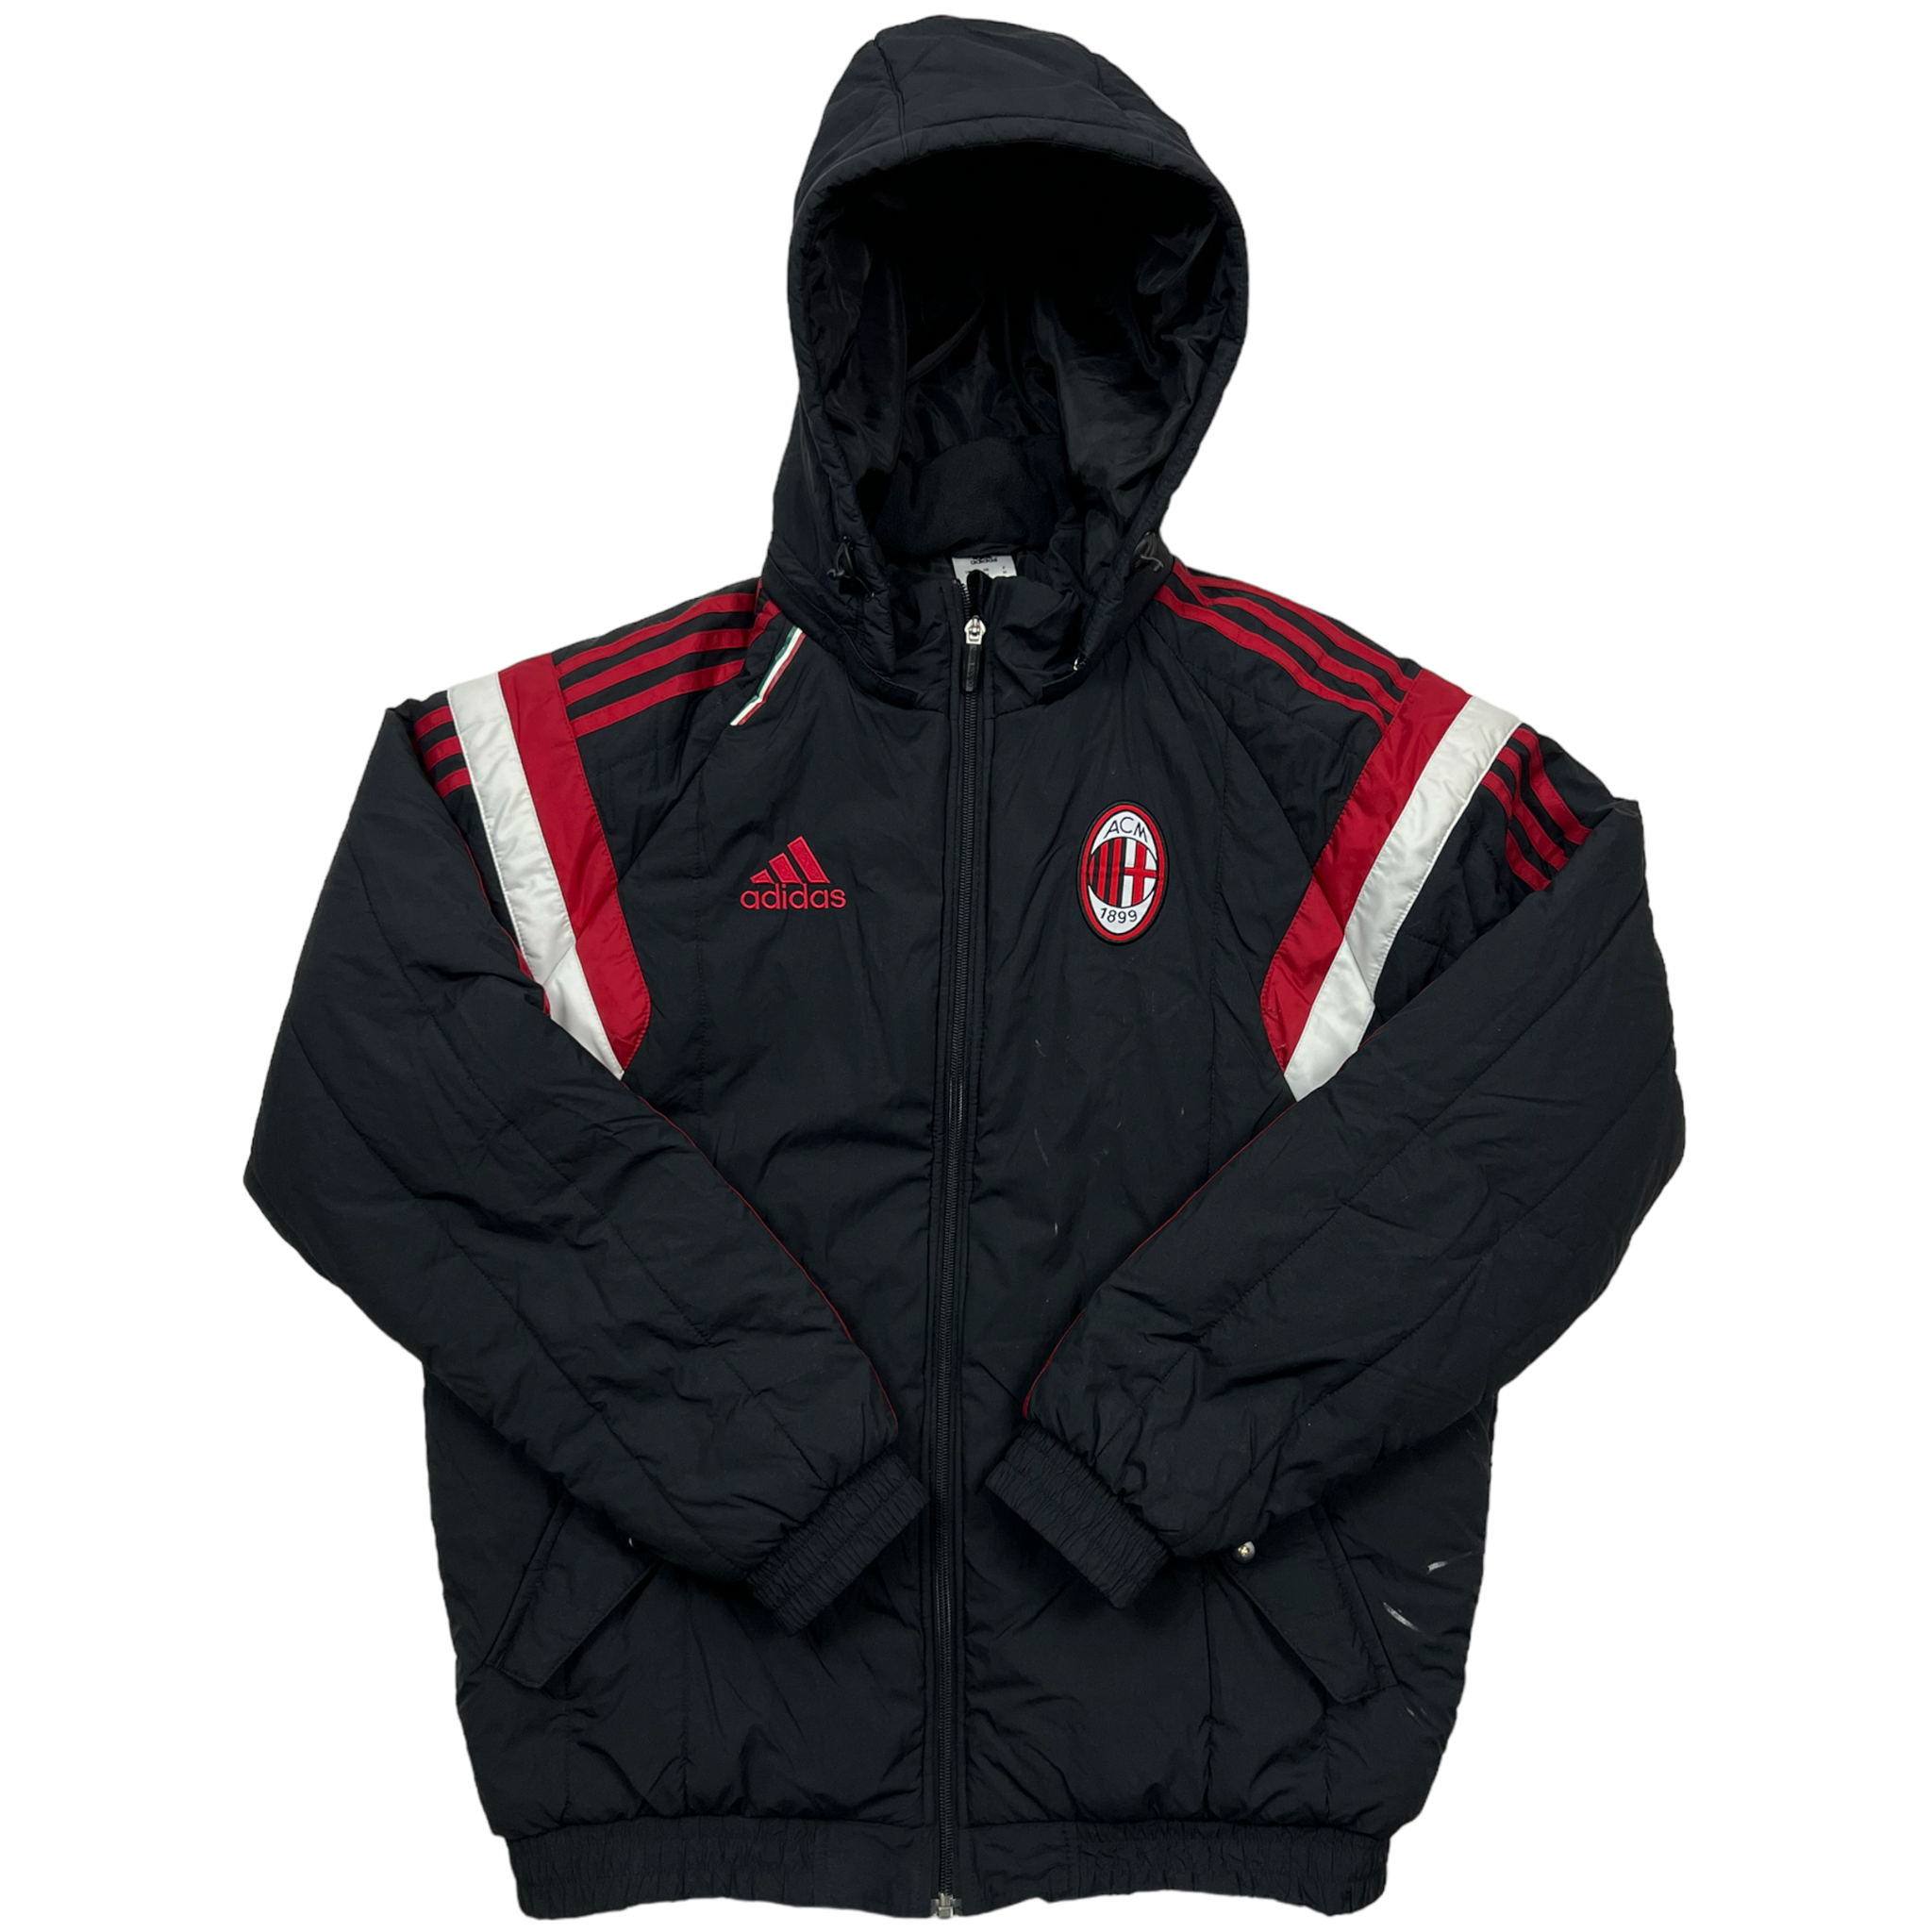 Adidas AC Milan Jacket (M)